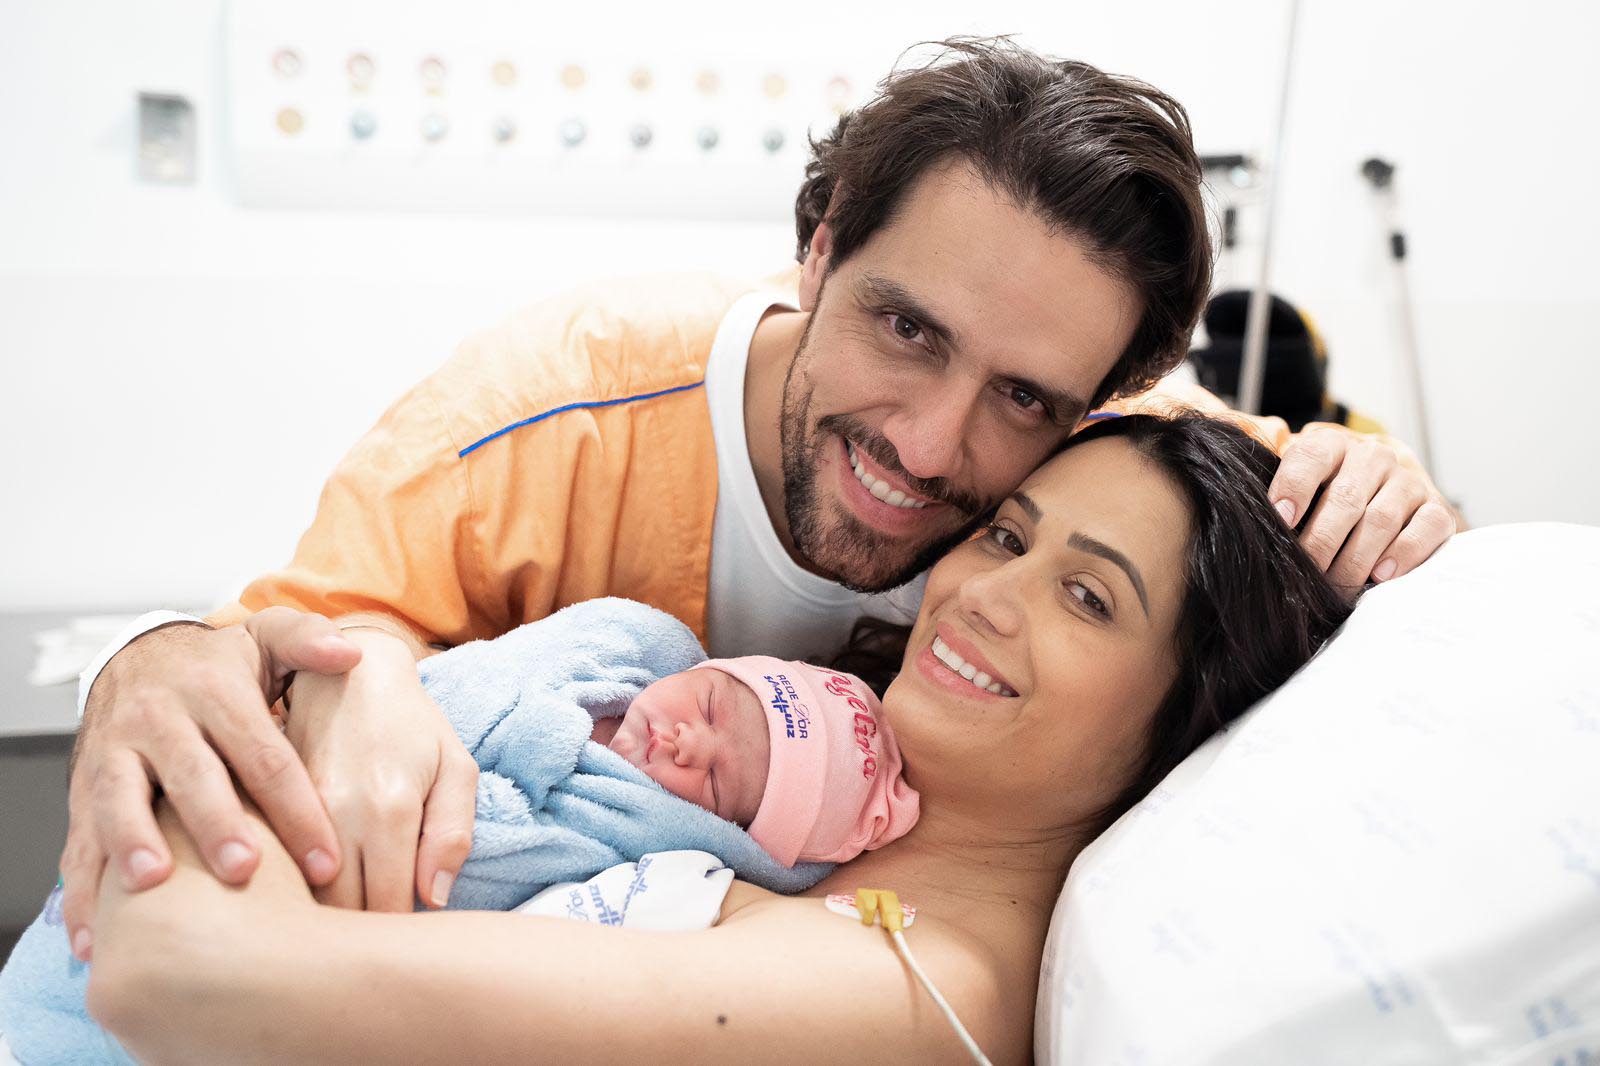 Thiago Arancam ao lado da esposa e da filha recém nascida